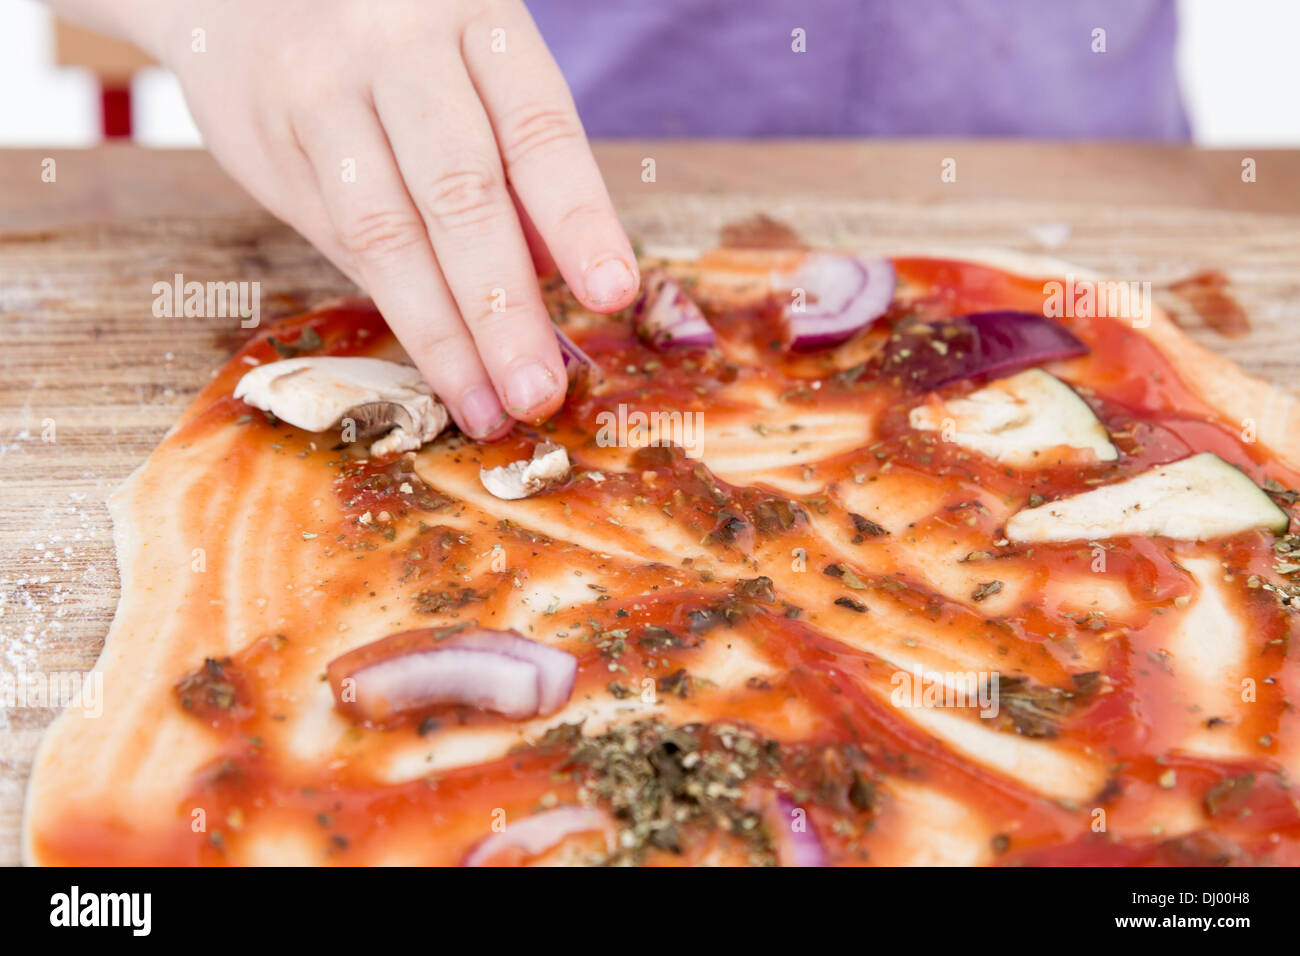 small hands preparing fresh pizza. studio shot. Stock Photo